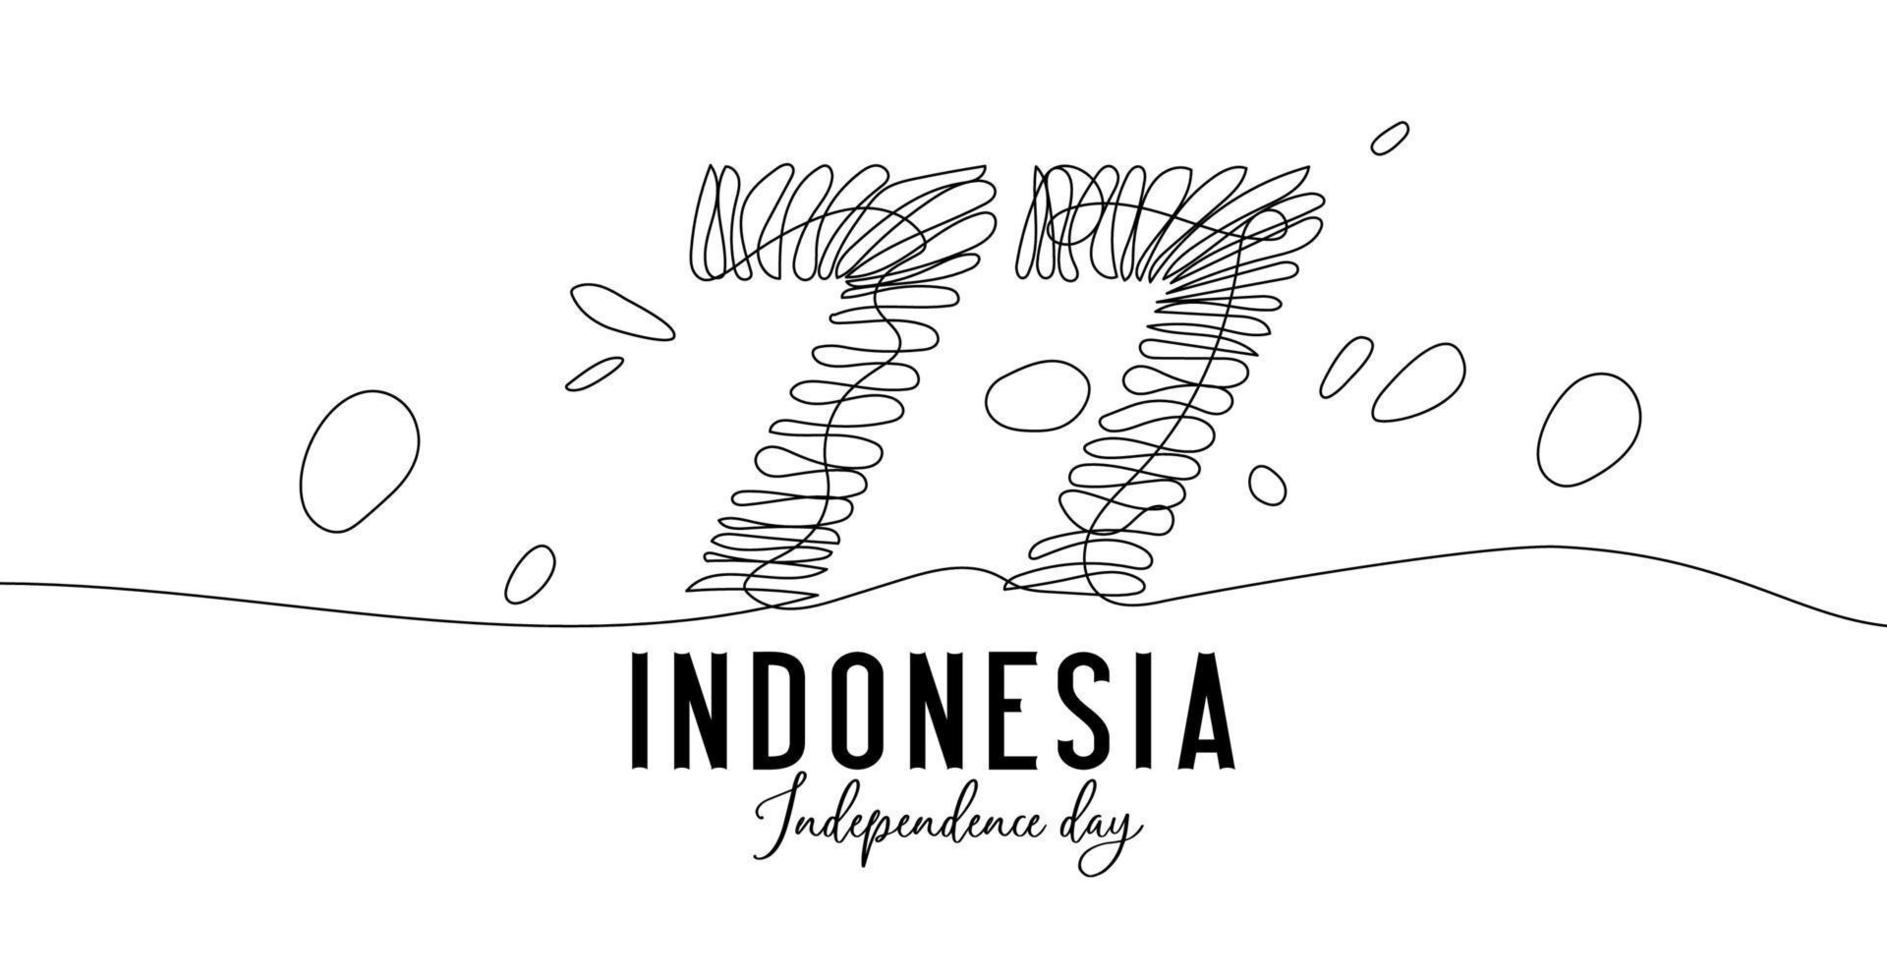 77 jaar onafhankelijkheidsdag van indonesië doorlopende tekening met één lijntekening. eenvoudig en elegant logo van de onafhankelijkheidsdag van Indonesië vector